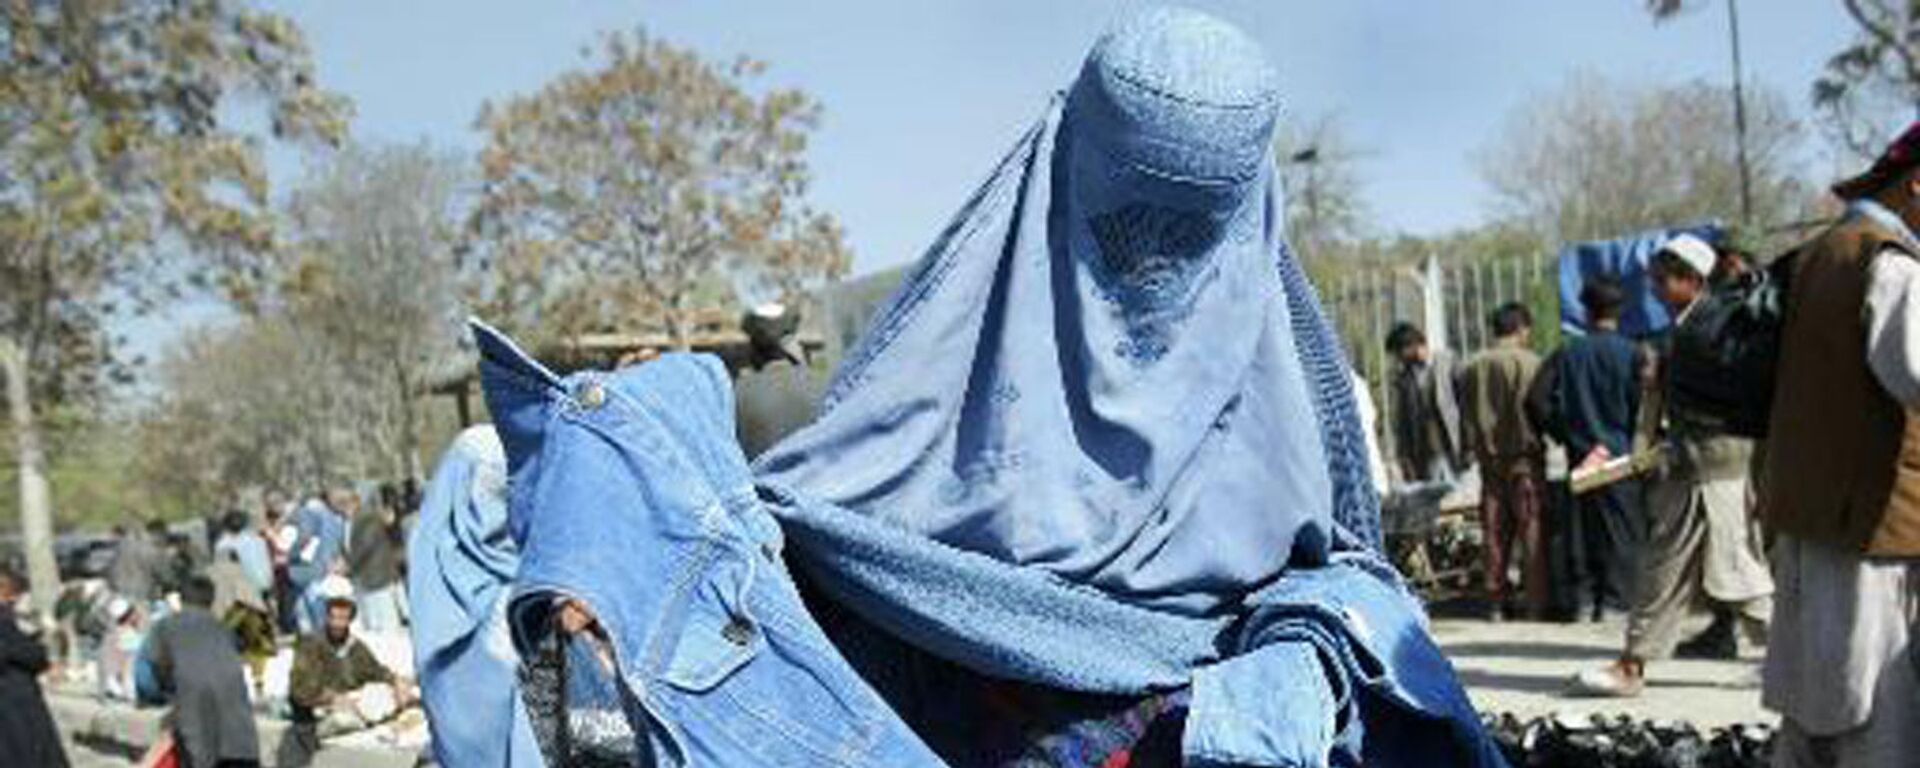 Афганская женщина выбирает голубые джинсы на улице Кабула, Афганистан, 2003 год - Sputnik International, 1920, 25.08.2021